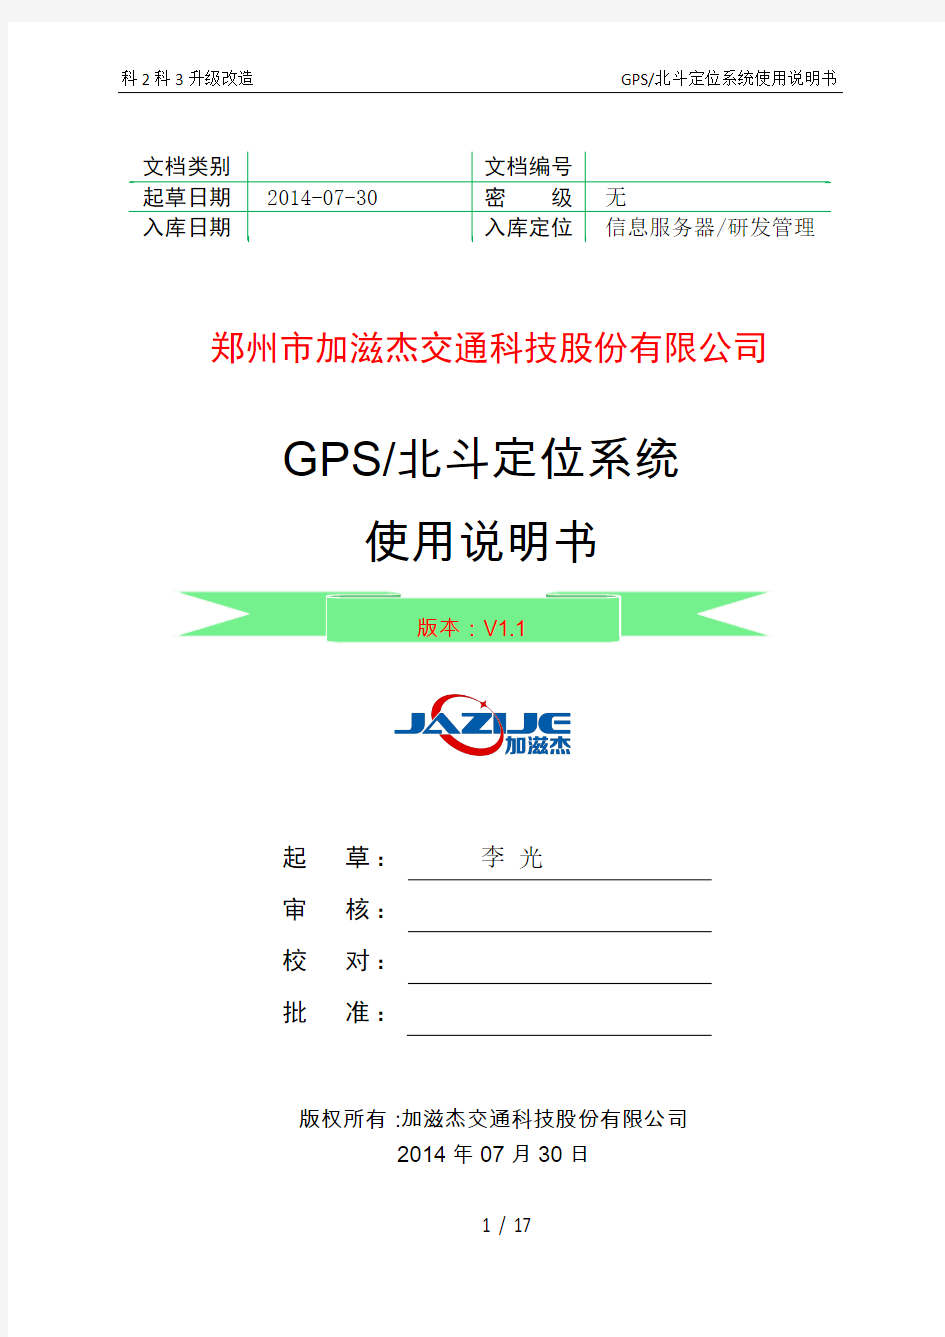 双差分GPS_北斗定位系统使用说明书140730